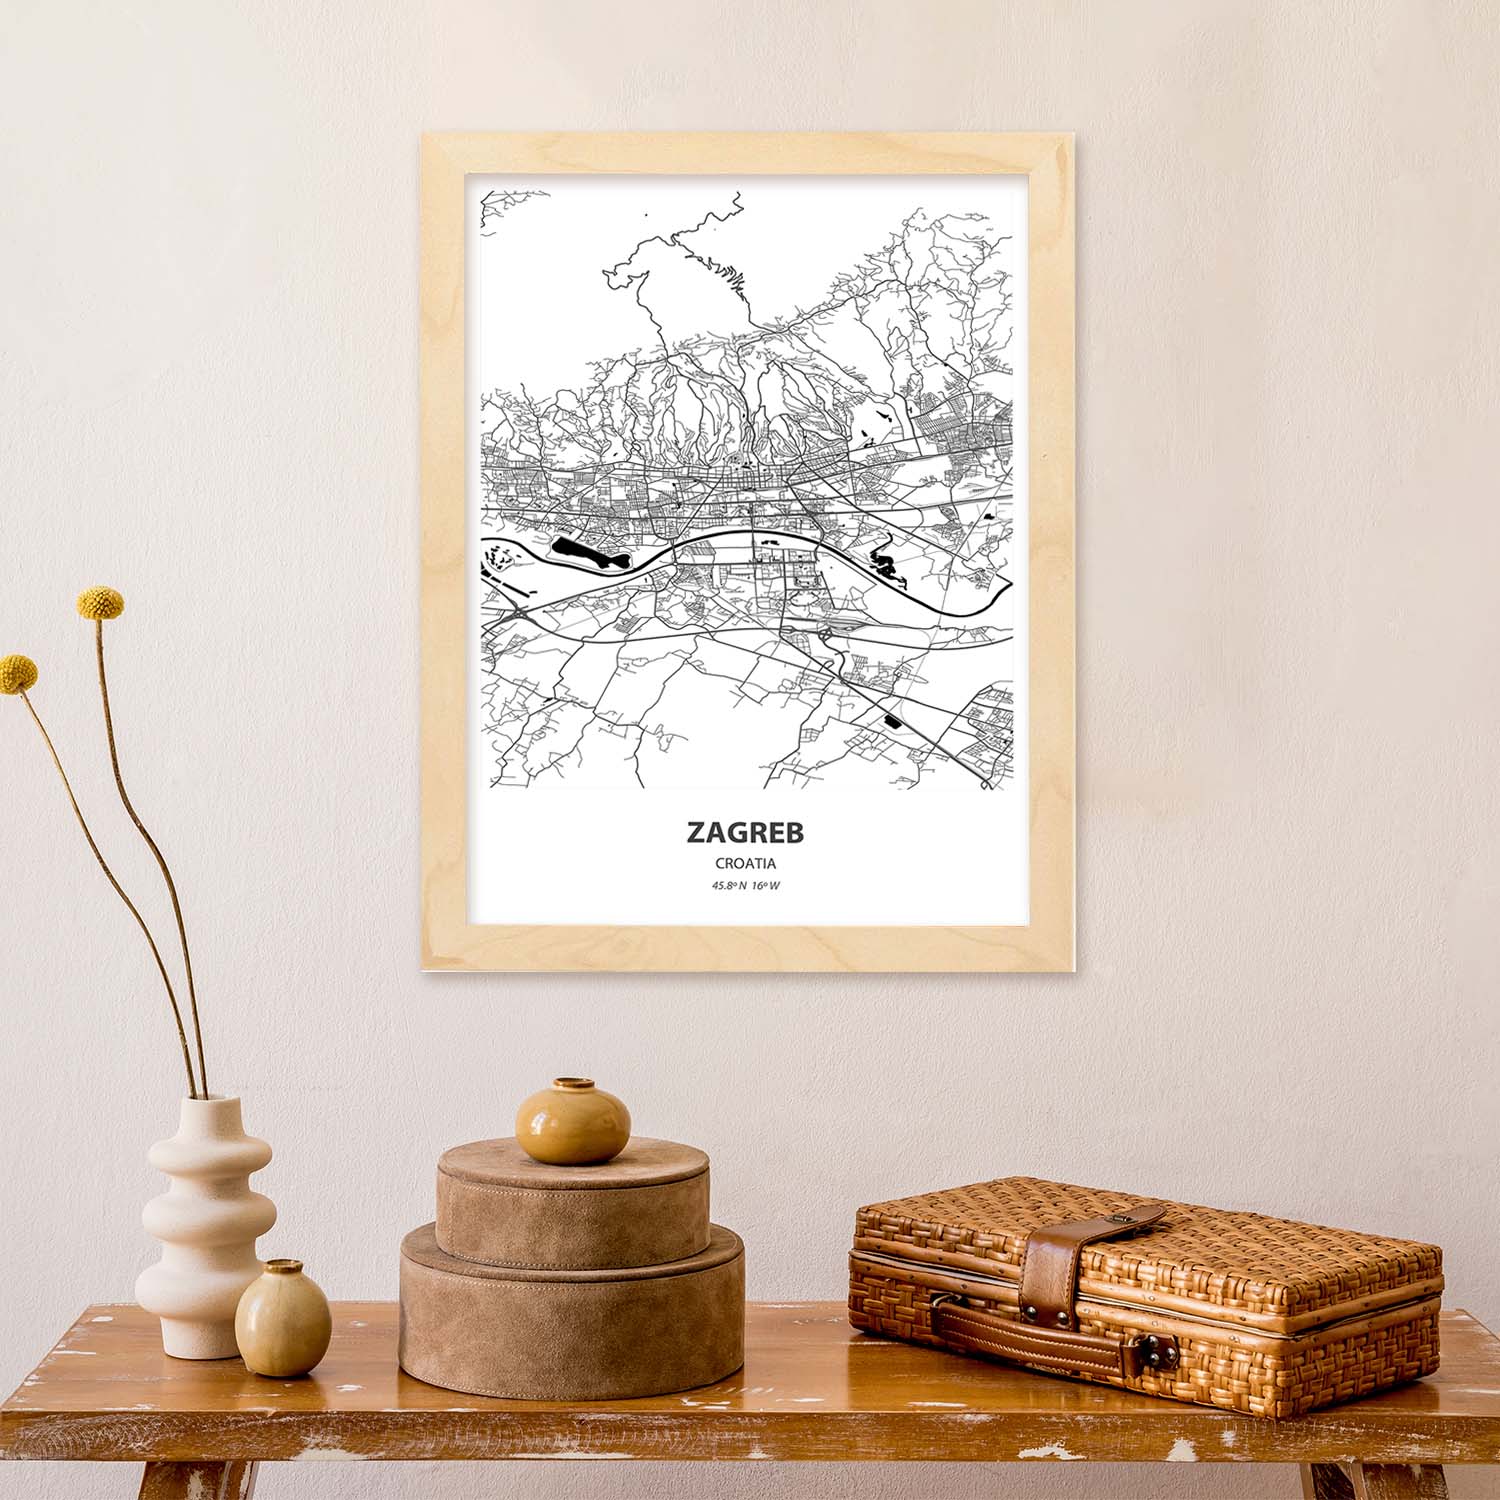 Poster con mapa de Zagreb - Croacia. Láminas de ciudades de Europa con mares y ríos en color negro.-Artwork-Nacnic-Nacnic Estudio SL